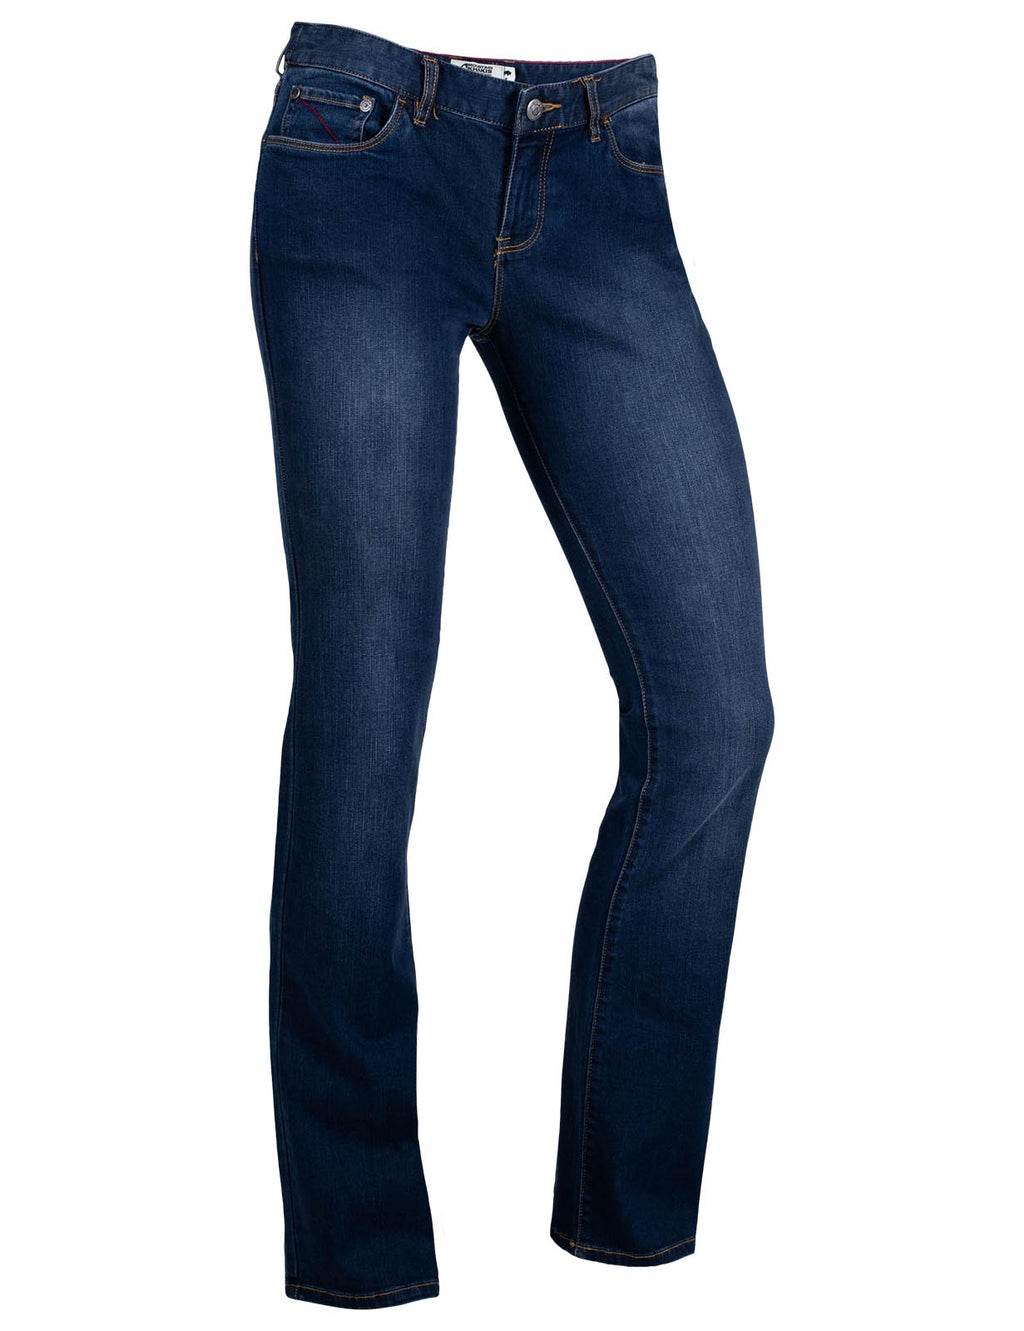 khaki jeans womens bootcut